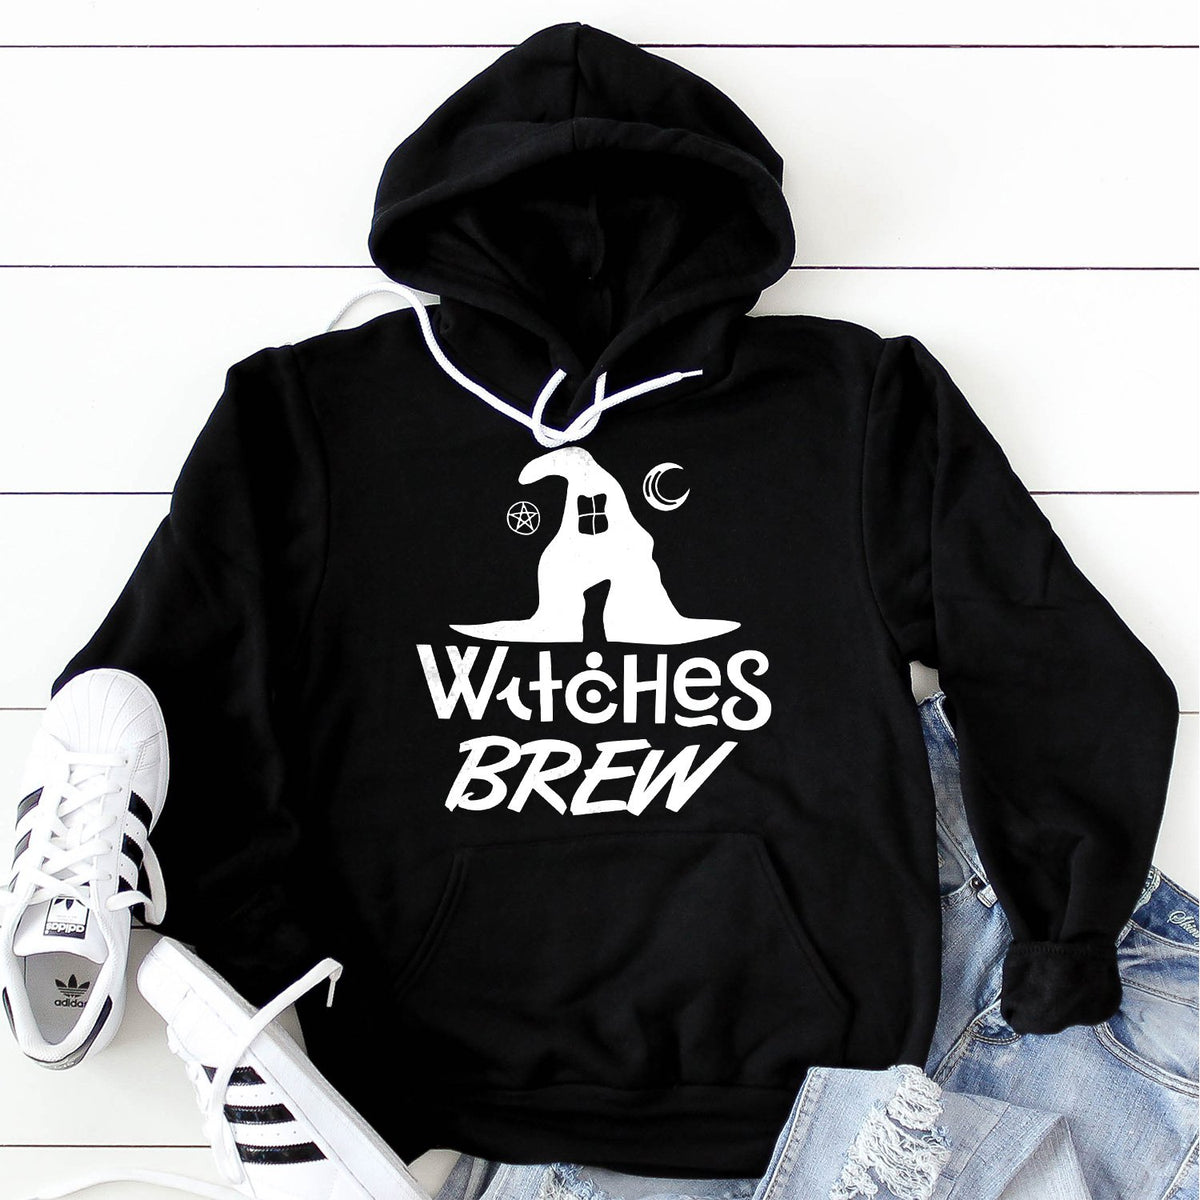 Witches Brew - Hoodie Sweatshirt